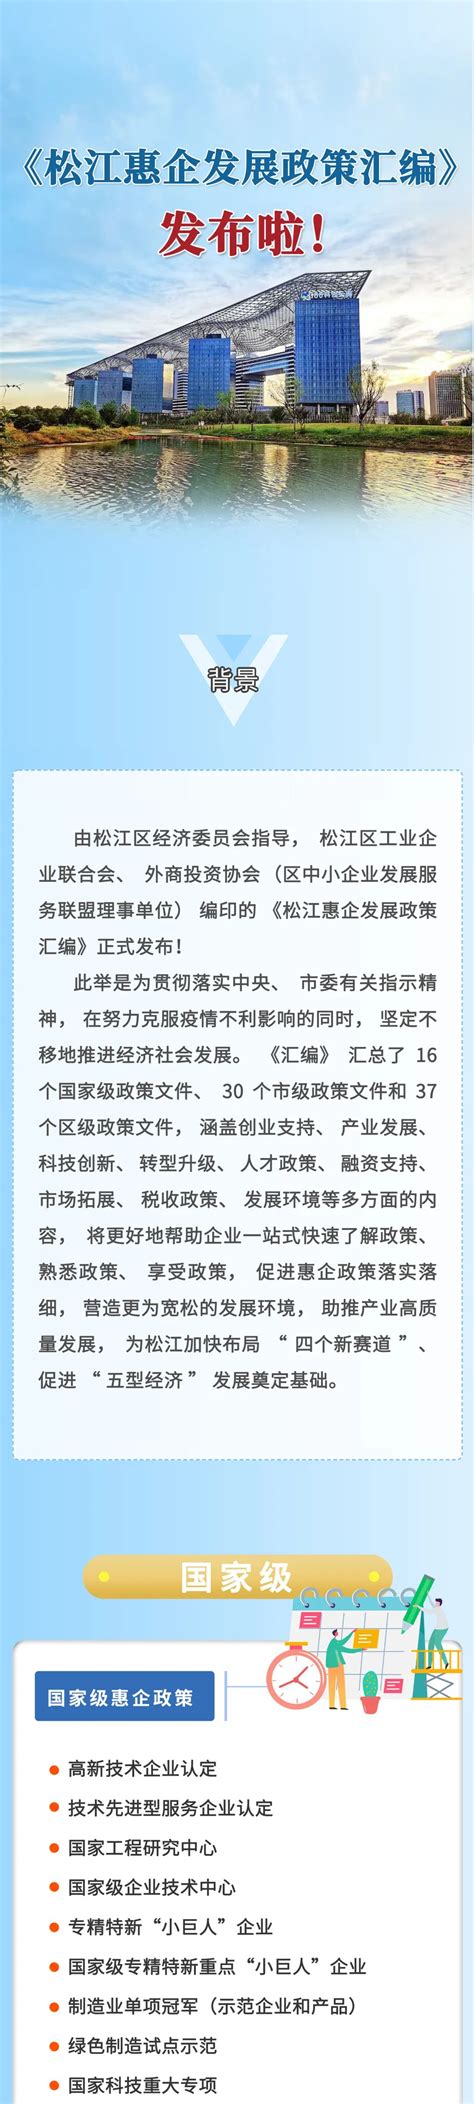 上海高新技术企业 - 2022年《松江惠企发展政策汇编》 - 上海高新技术企业服务